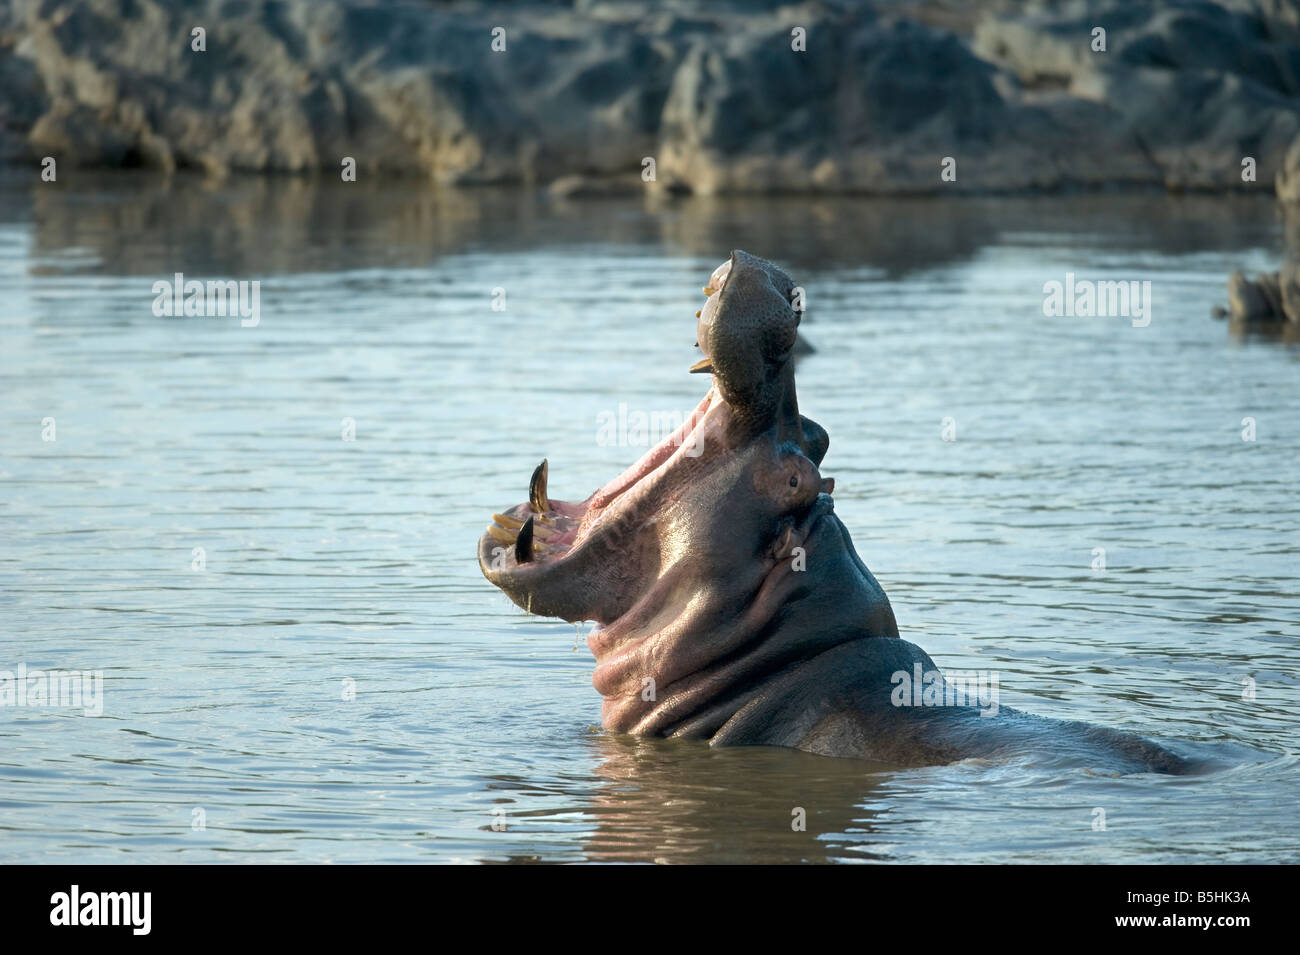 Hippopotamus in the water Stock Photo